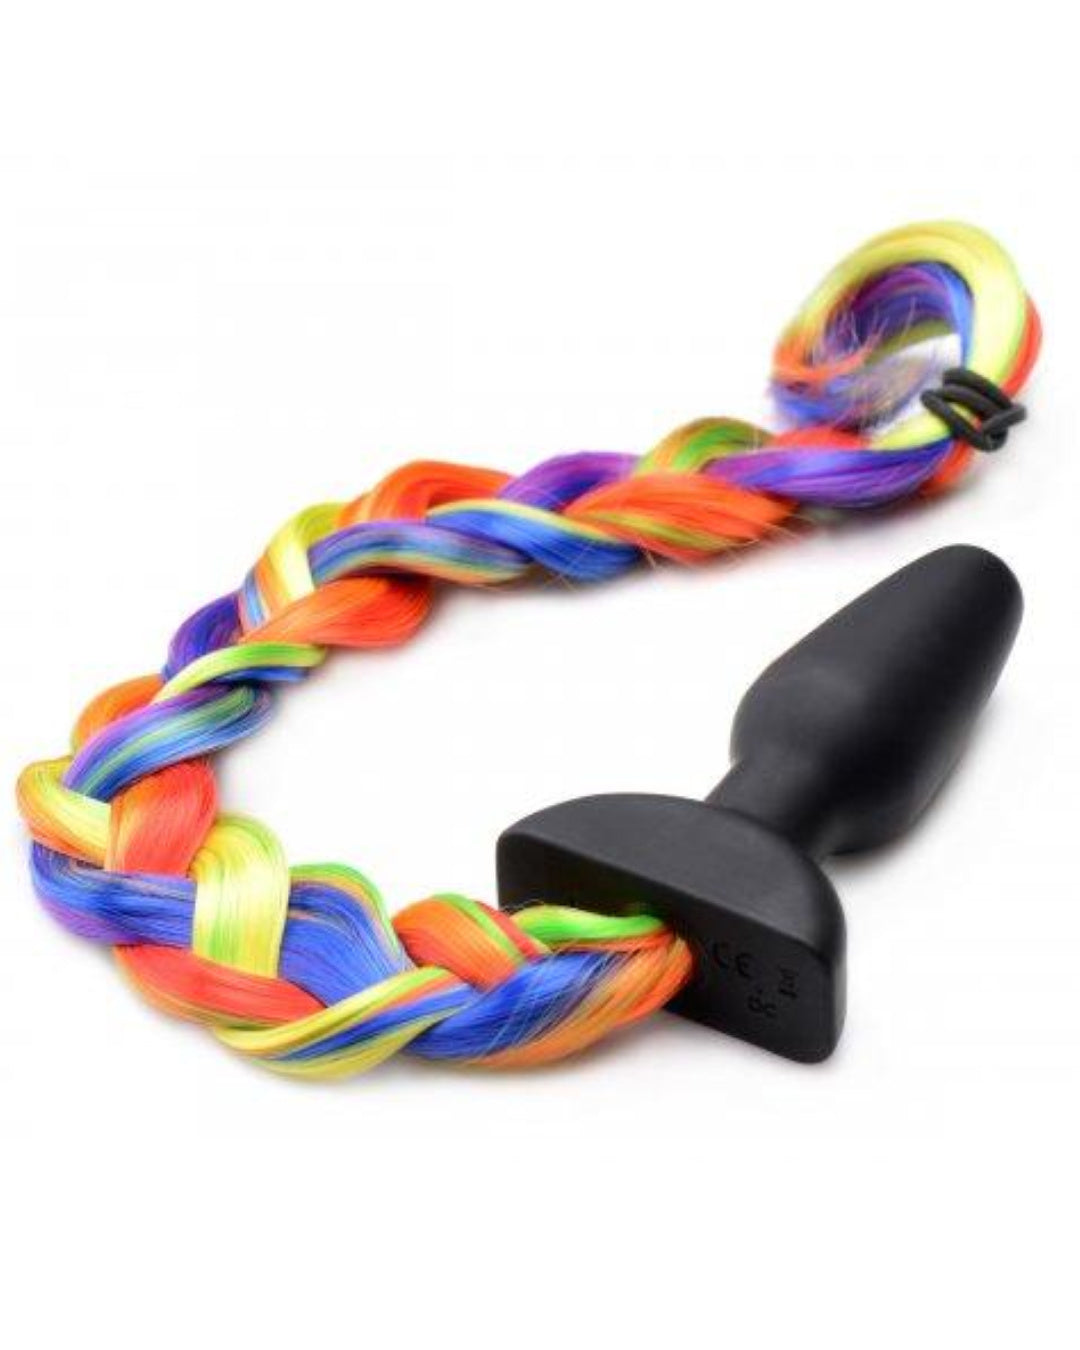 Tailz Rainbow Vibrating Pony Tail Anal Plug braided tail 